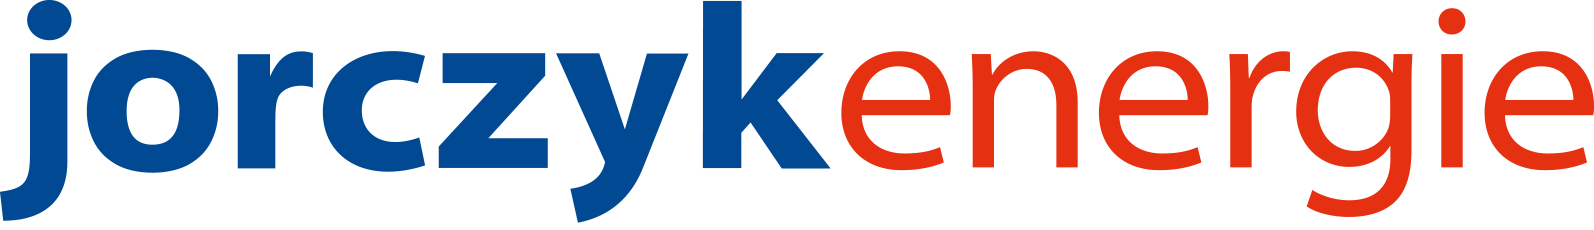 logo-jorczykenergie-ohneclaim